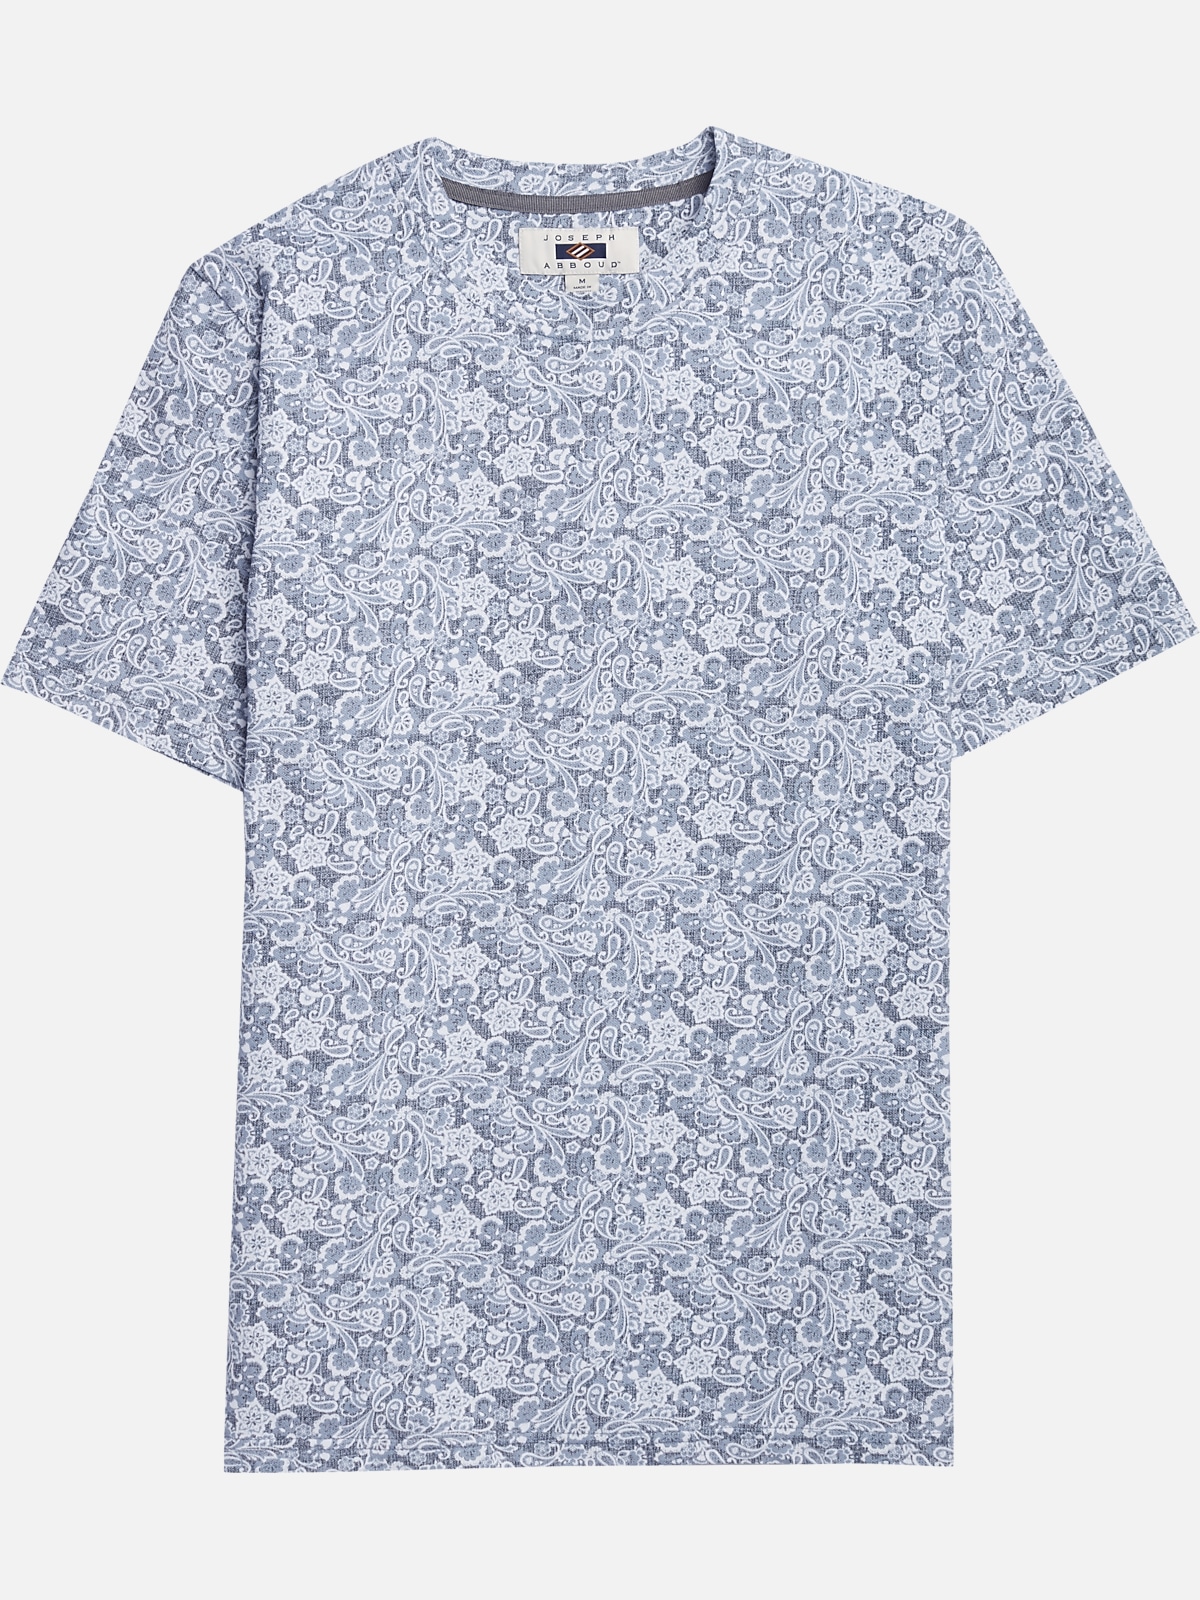 Joseph Abboud Floral Crew Neck Shirt | All Sale| Men's Wearhouse